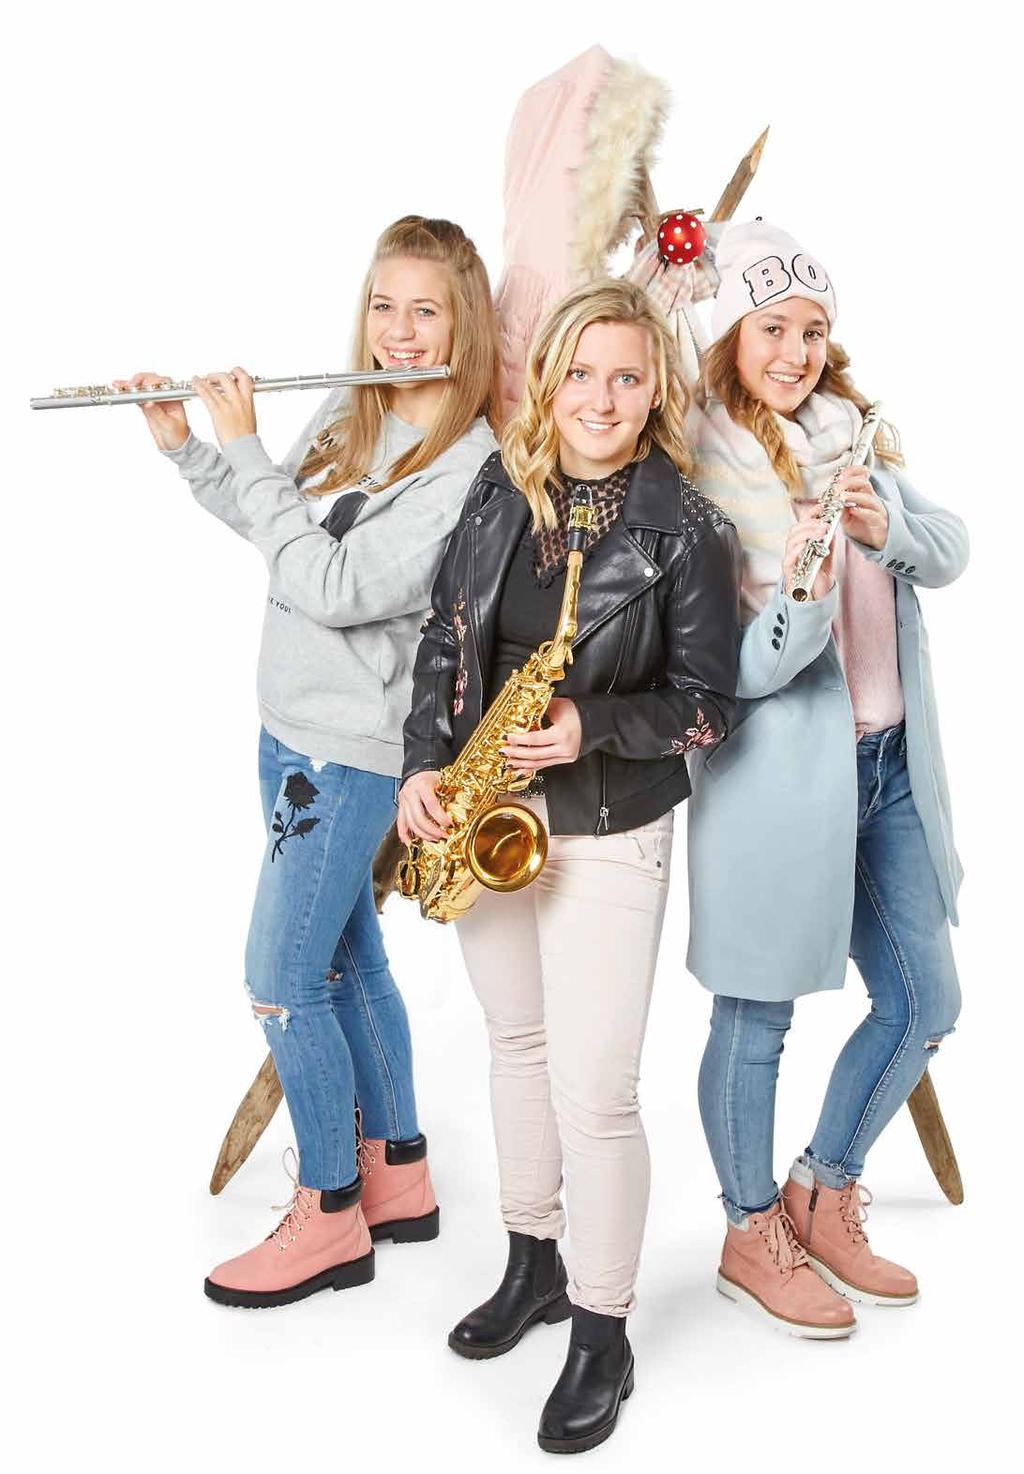 ARKADE NEWS Winter 2017 Musik liegt in der Luft Diese Ausgabe steht im Zeichen der Musik so sind alle unseren jungen Models diesmal SchülerInnen der Musikschule Liezen!